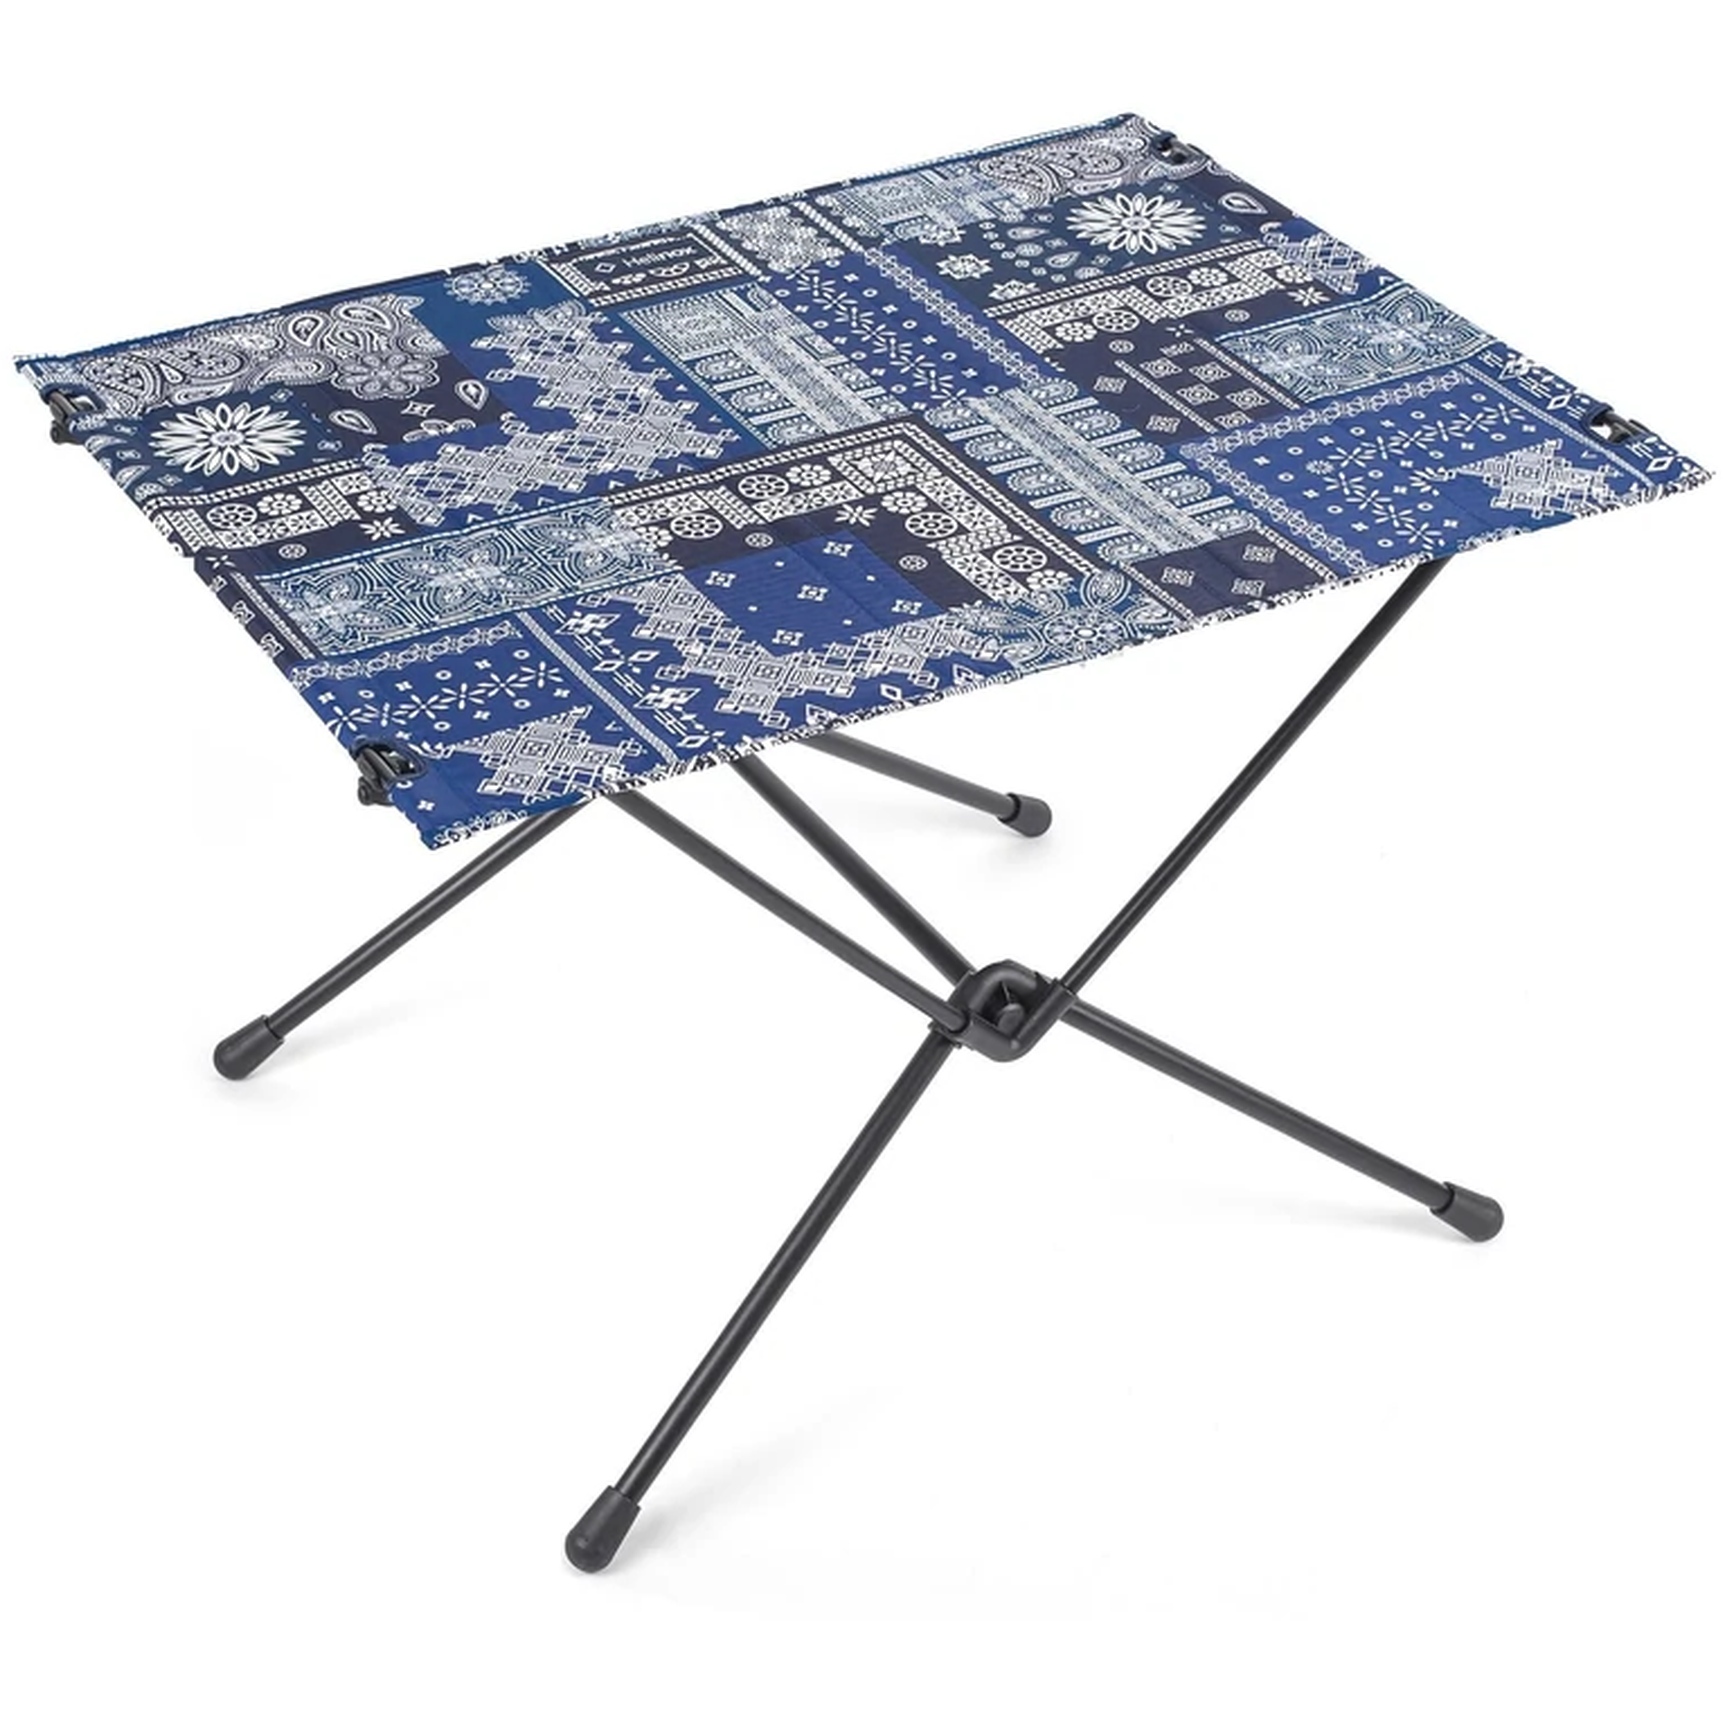 Produktbild von Helinox Table One Hard Top L - Campingtisch - blue bandanna - schwarz